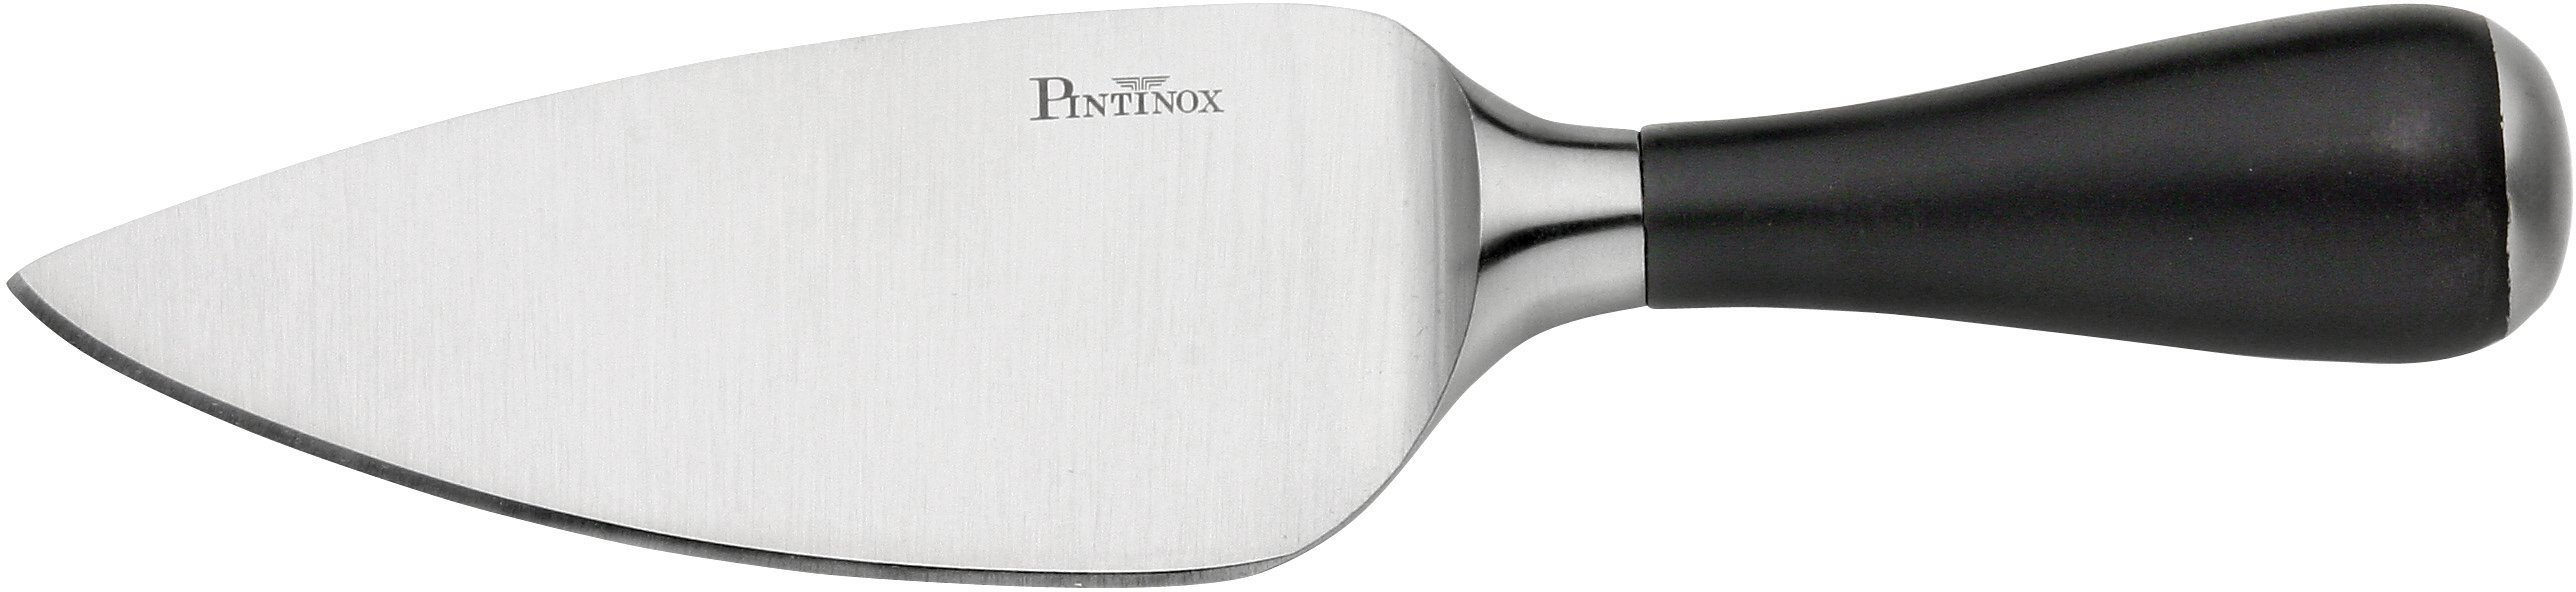 PINTINOX Allzweckmesser Coltelli Professional, Parmesankäsemesser und  Gemüsemesser, Edelstahl/Kunststoff | Pizzaschneider